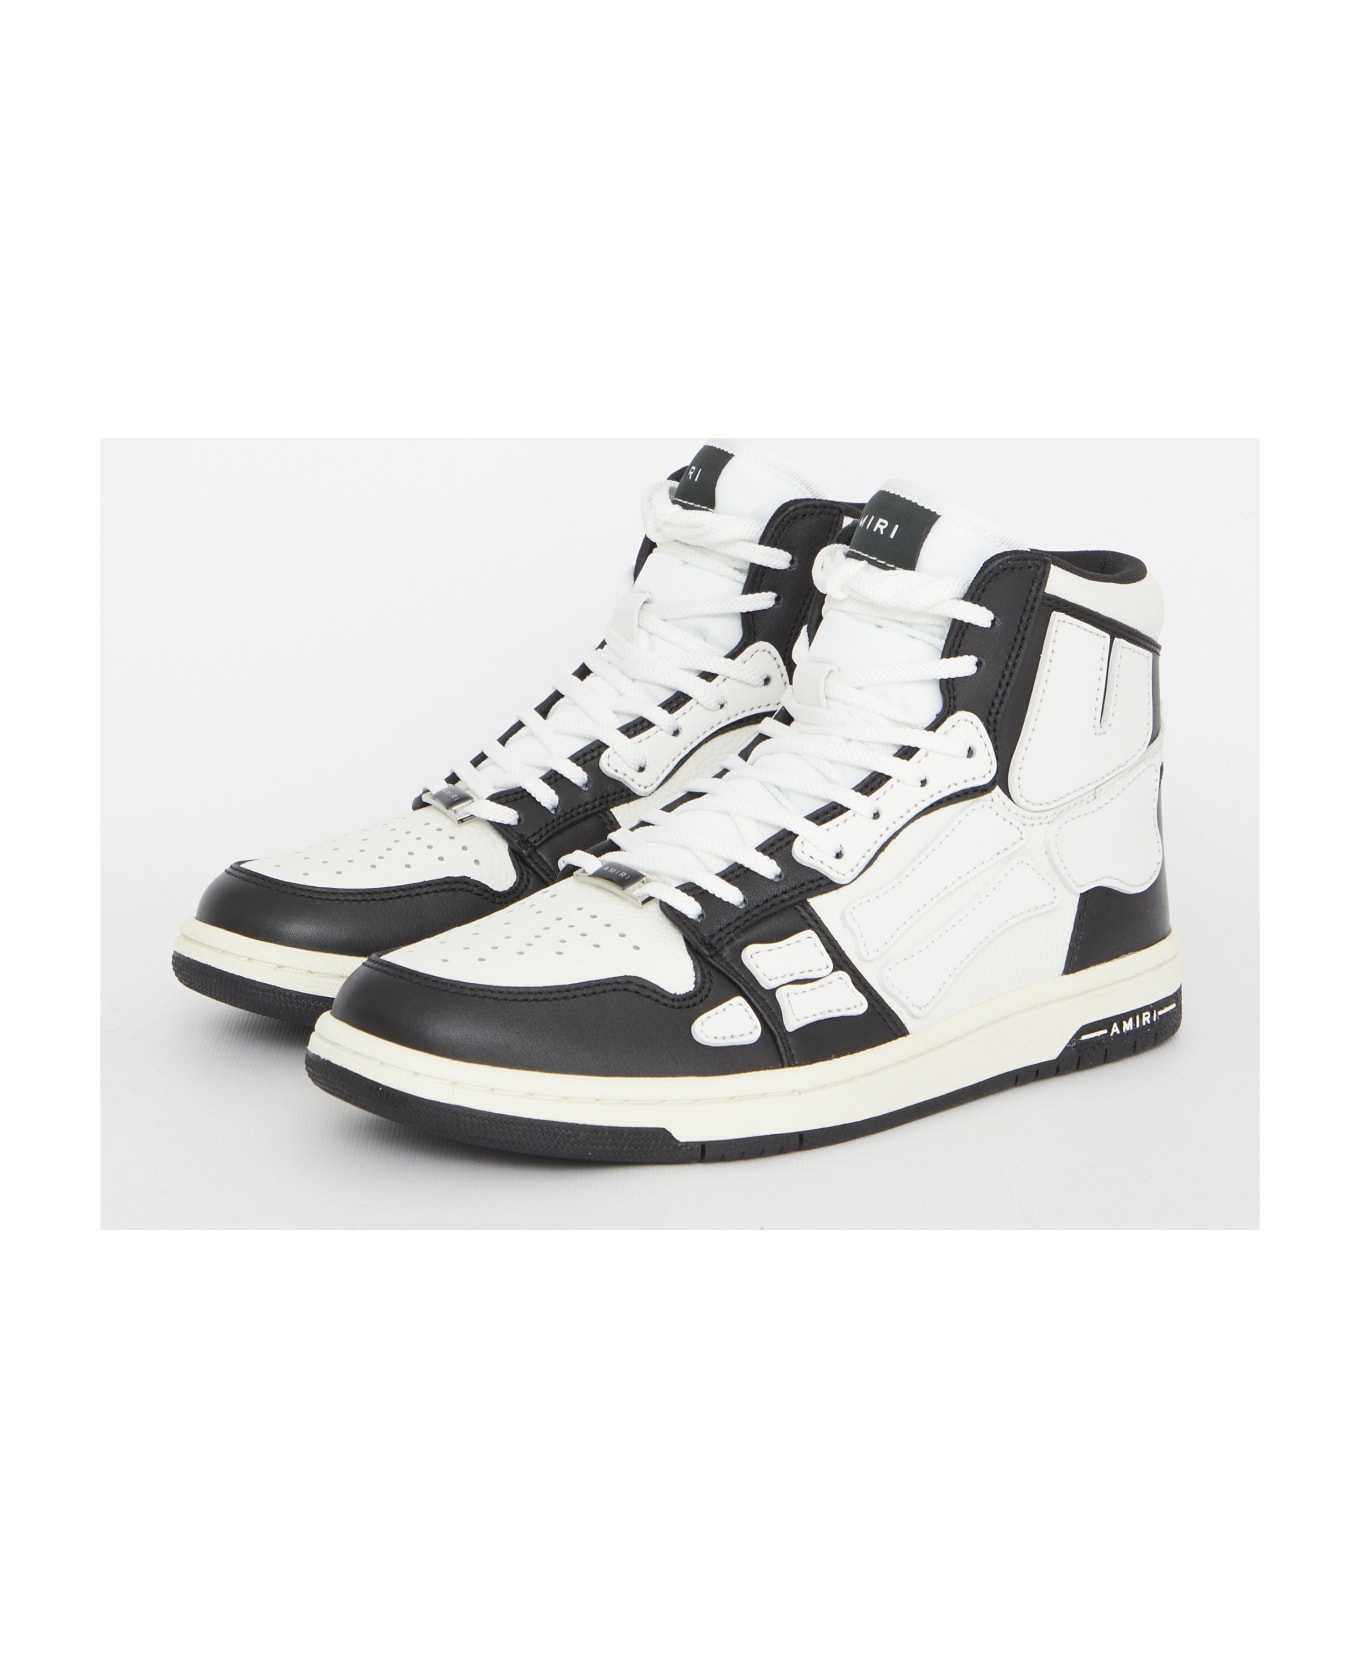 AMIRI Skel-top Hi Sneakers - BLACK WHITE